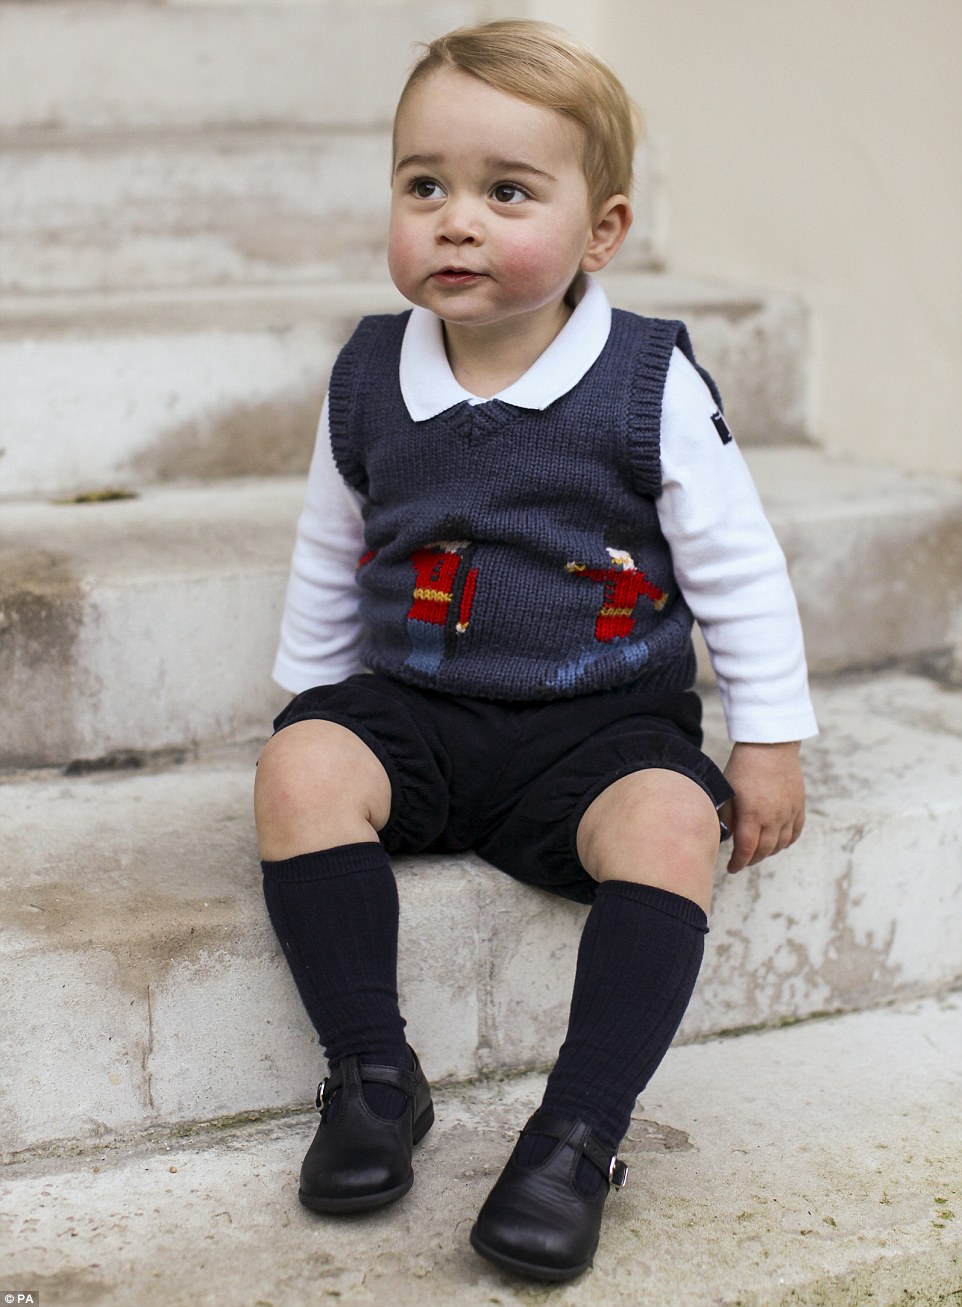 这些照片是在肯辛顿宫（Kensington Palace）所拍摄的，可爱的小王子就在庭院的街上又笑又摆姿势的。